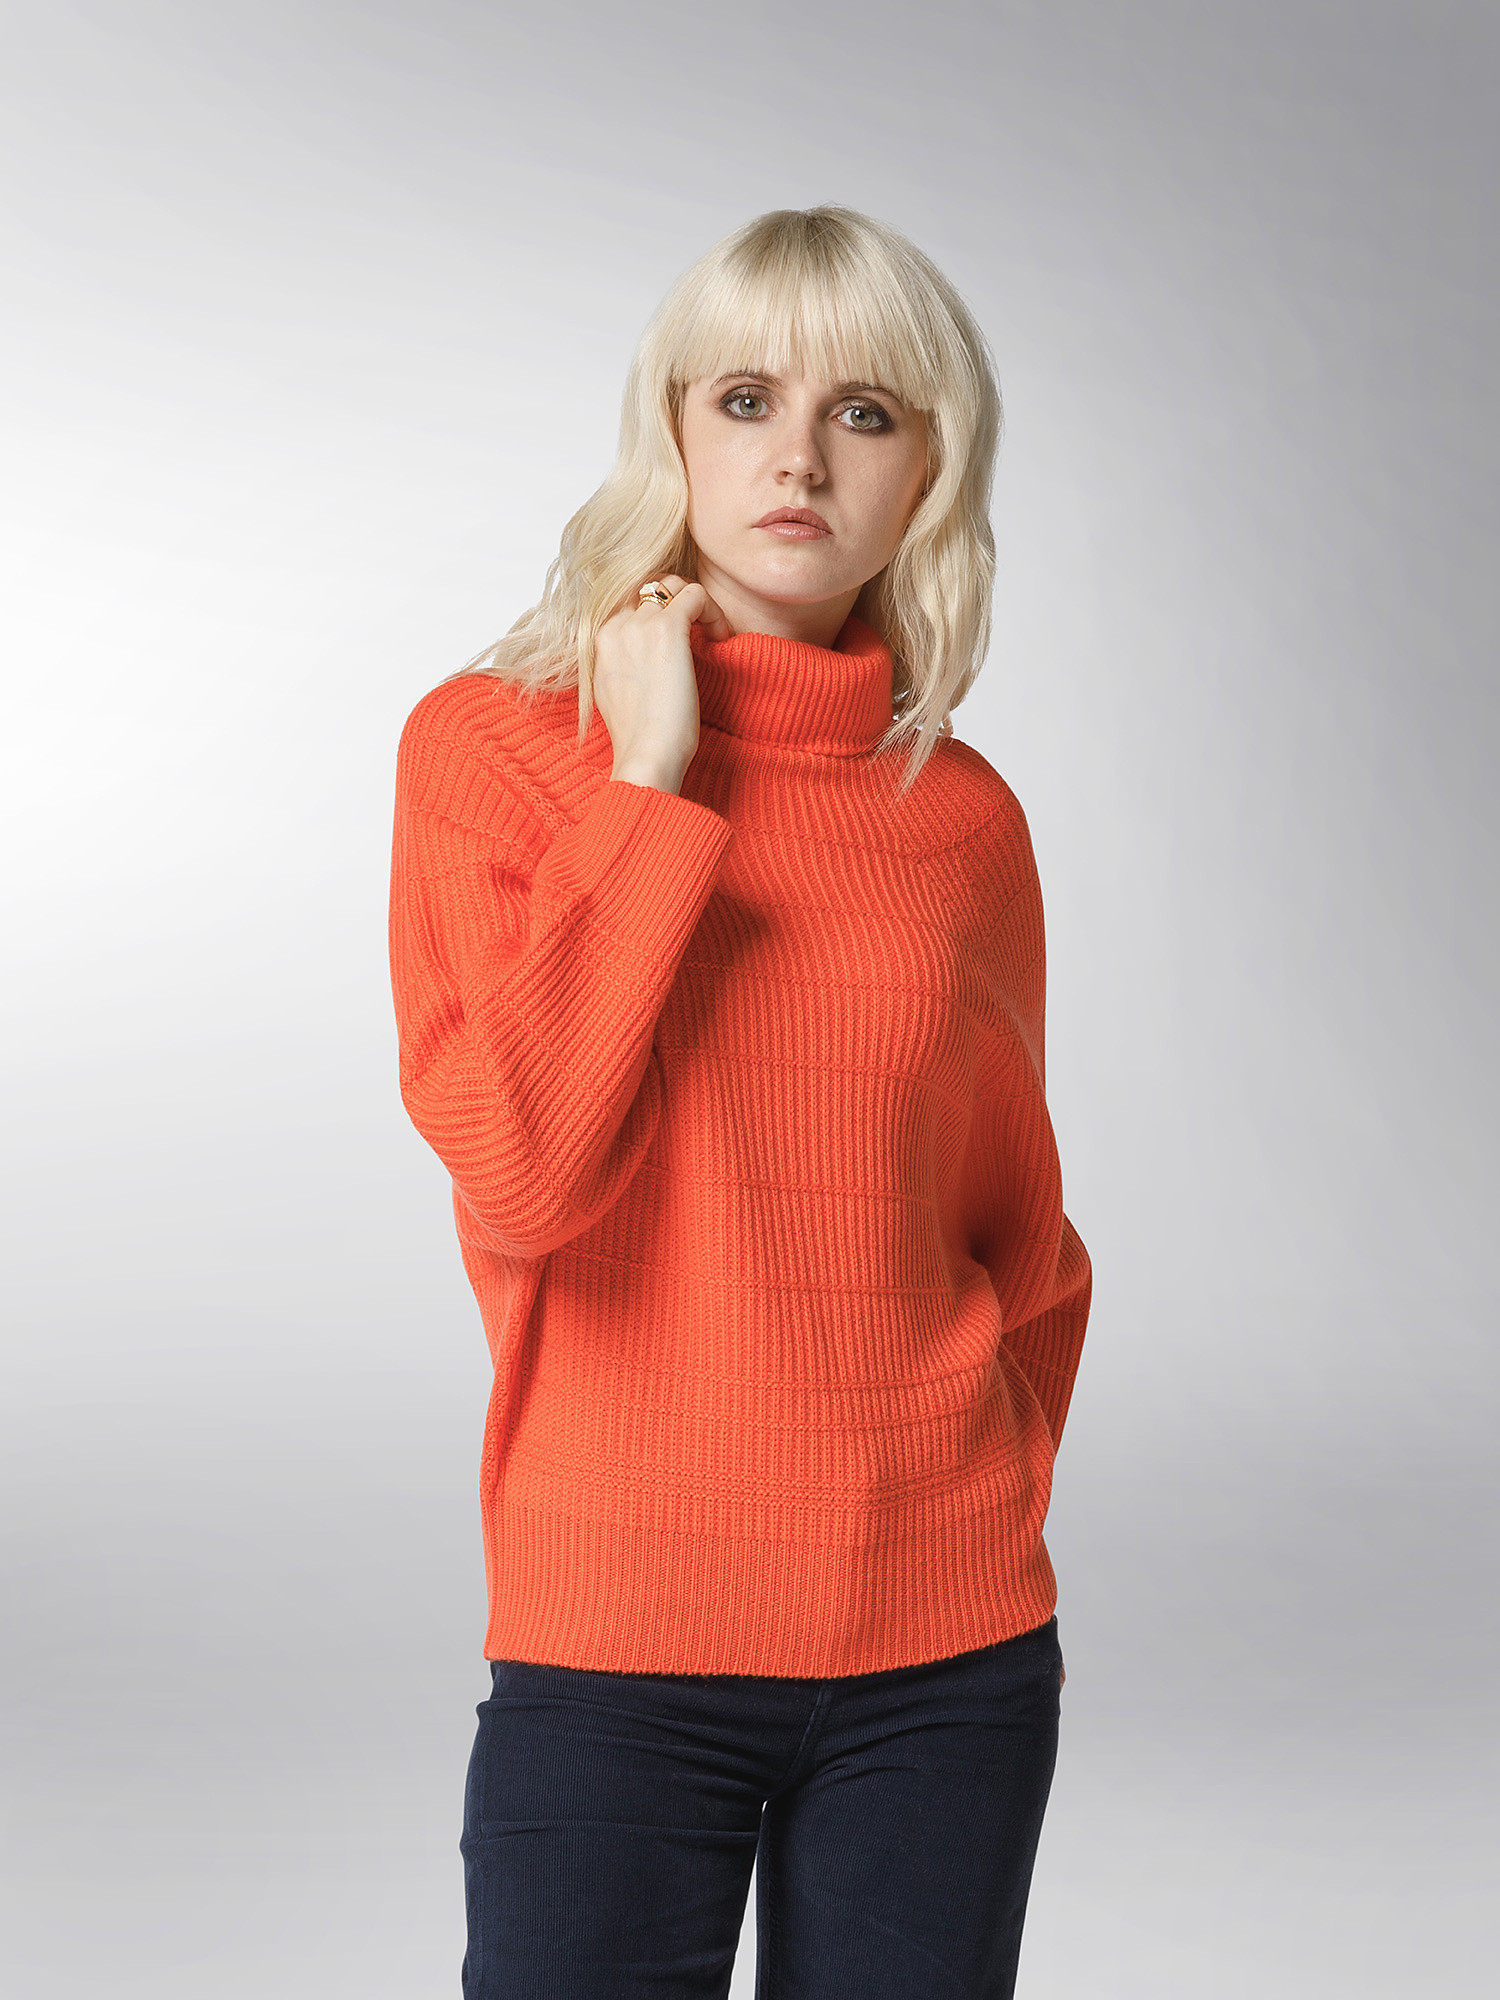 K Collection - Turtleneck pullover, Orange, large image number 3